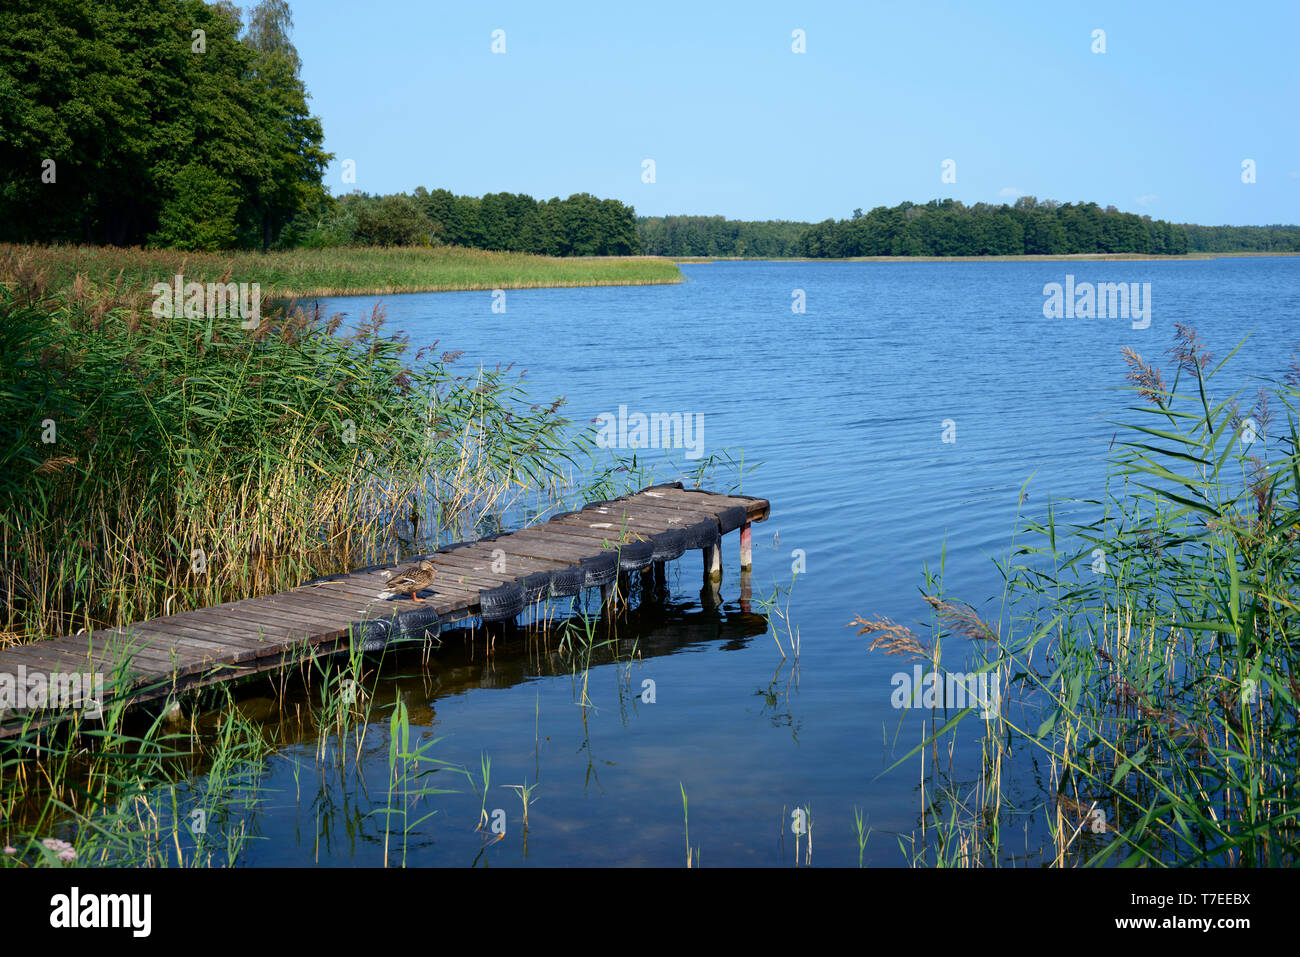 Elixir camp, Lake Kisajno, Wrony, Warmia Masuria, Poland Stock Photo